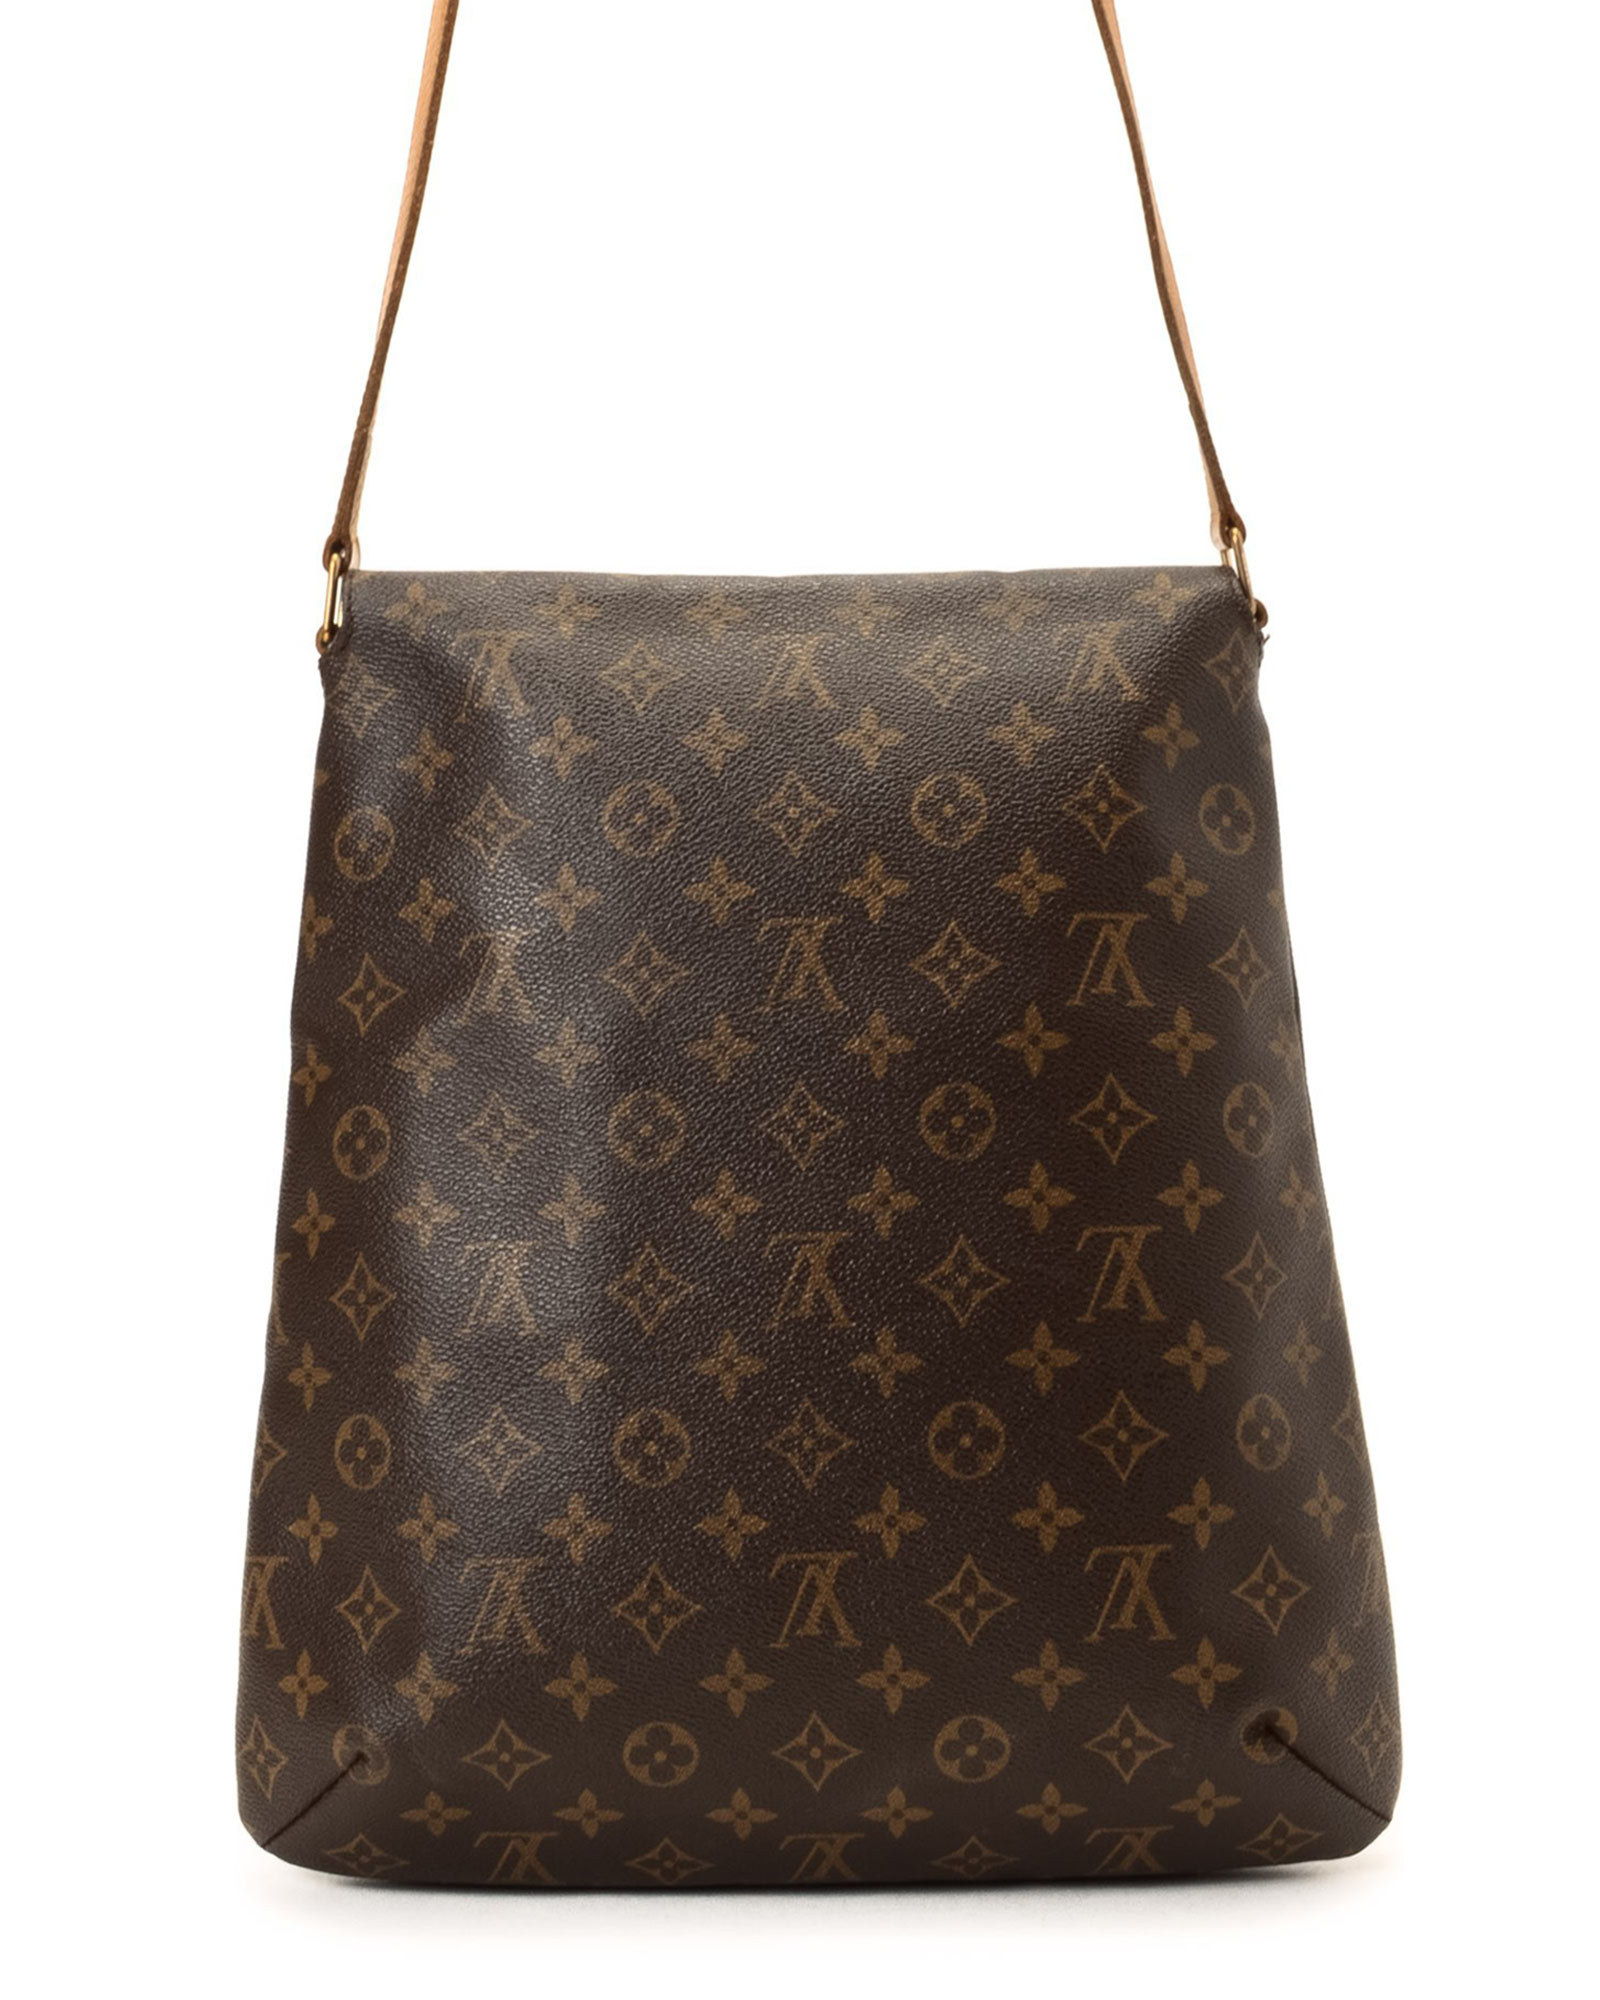 Lyst - Louis Vuitton Brown Shoulder Bag - Vintage in Brown